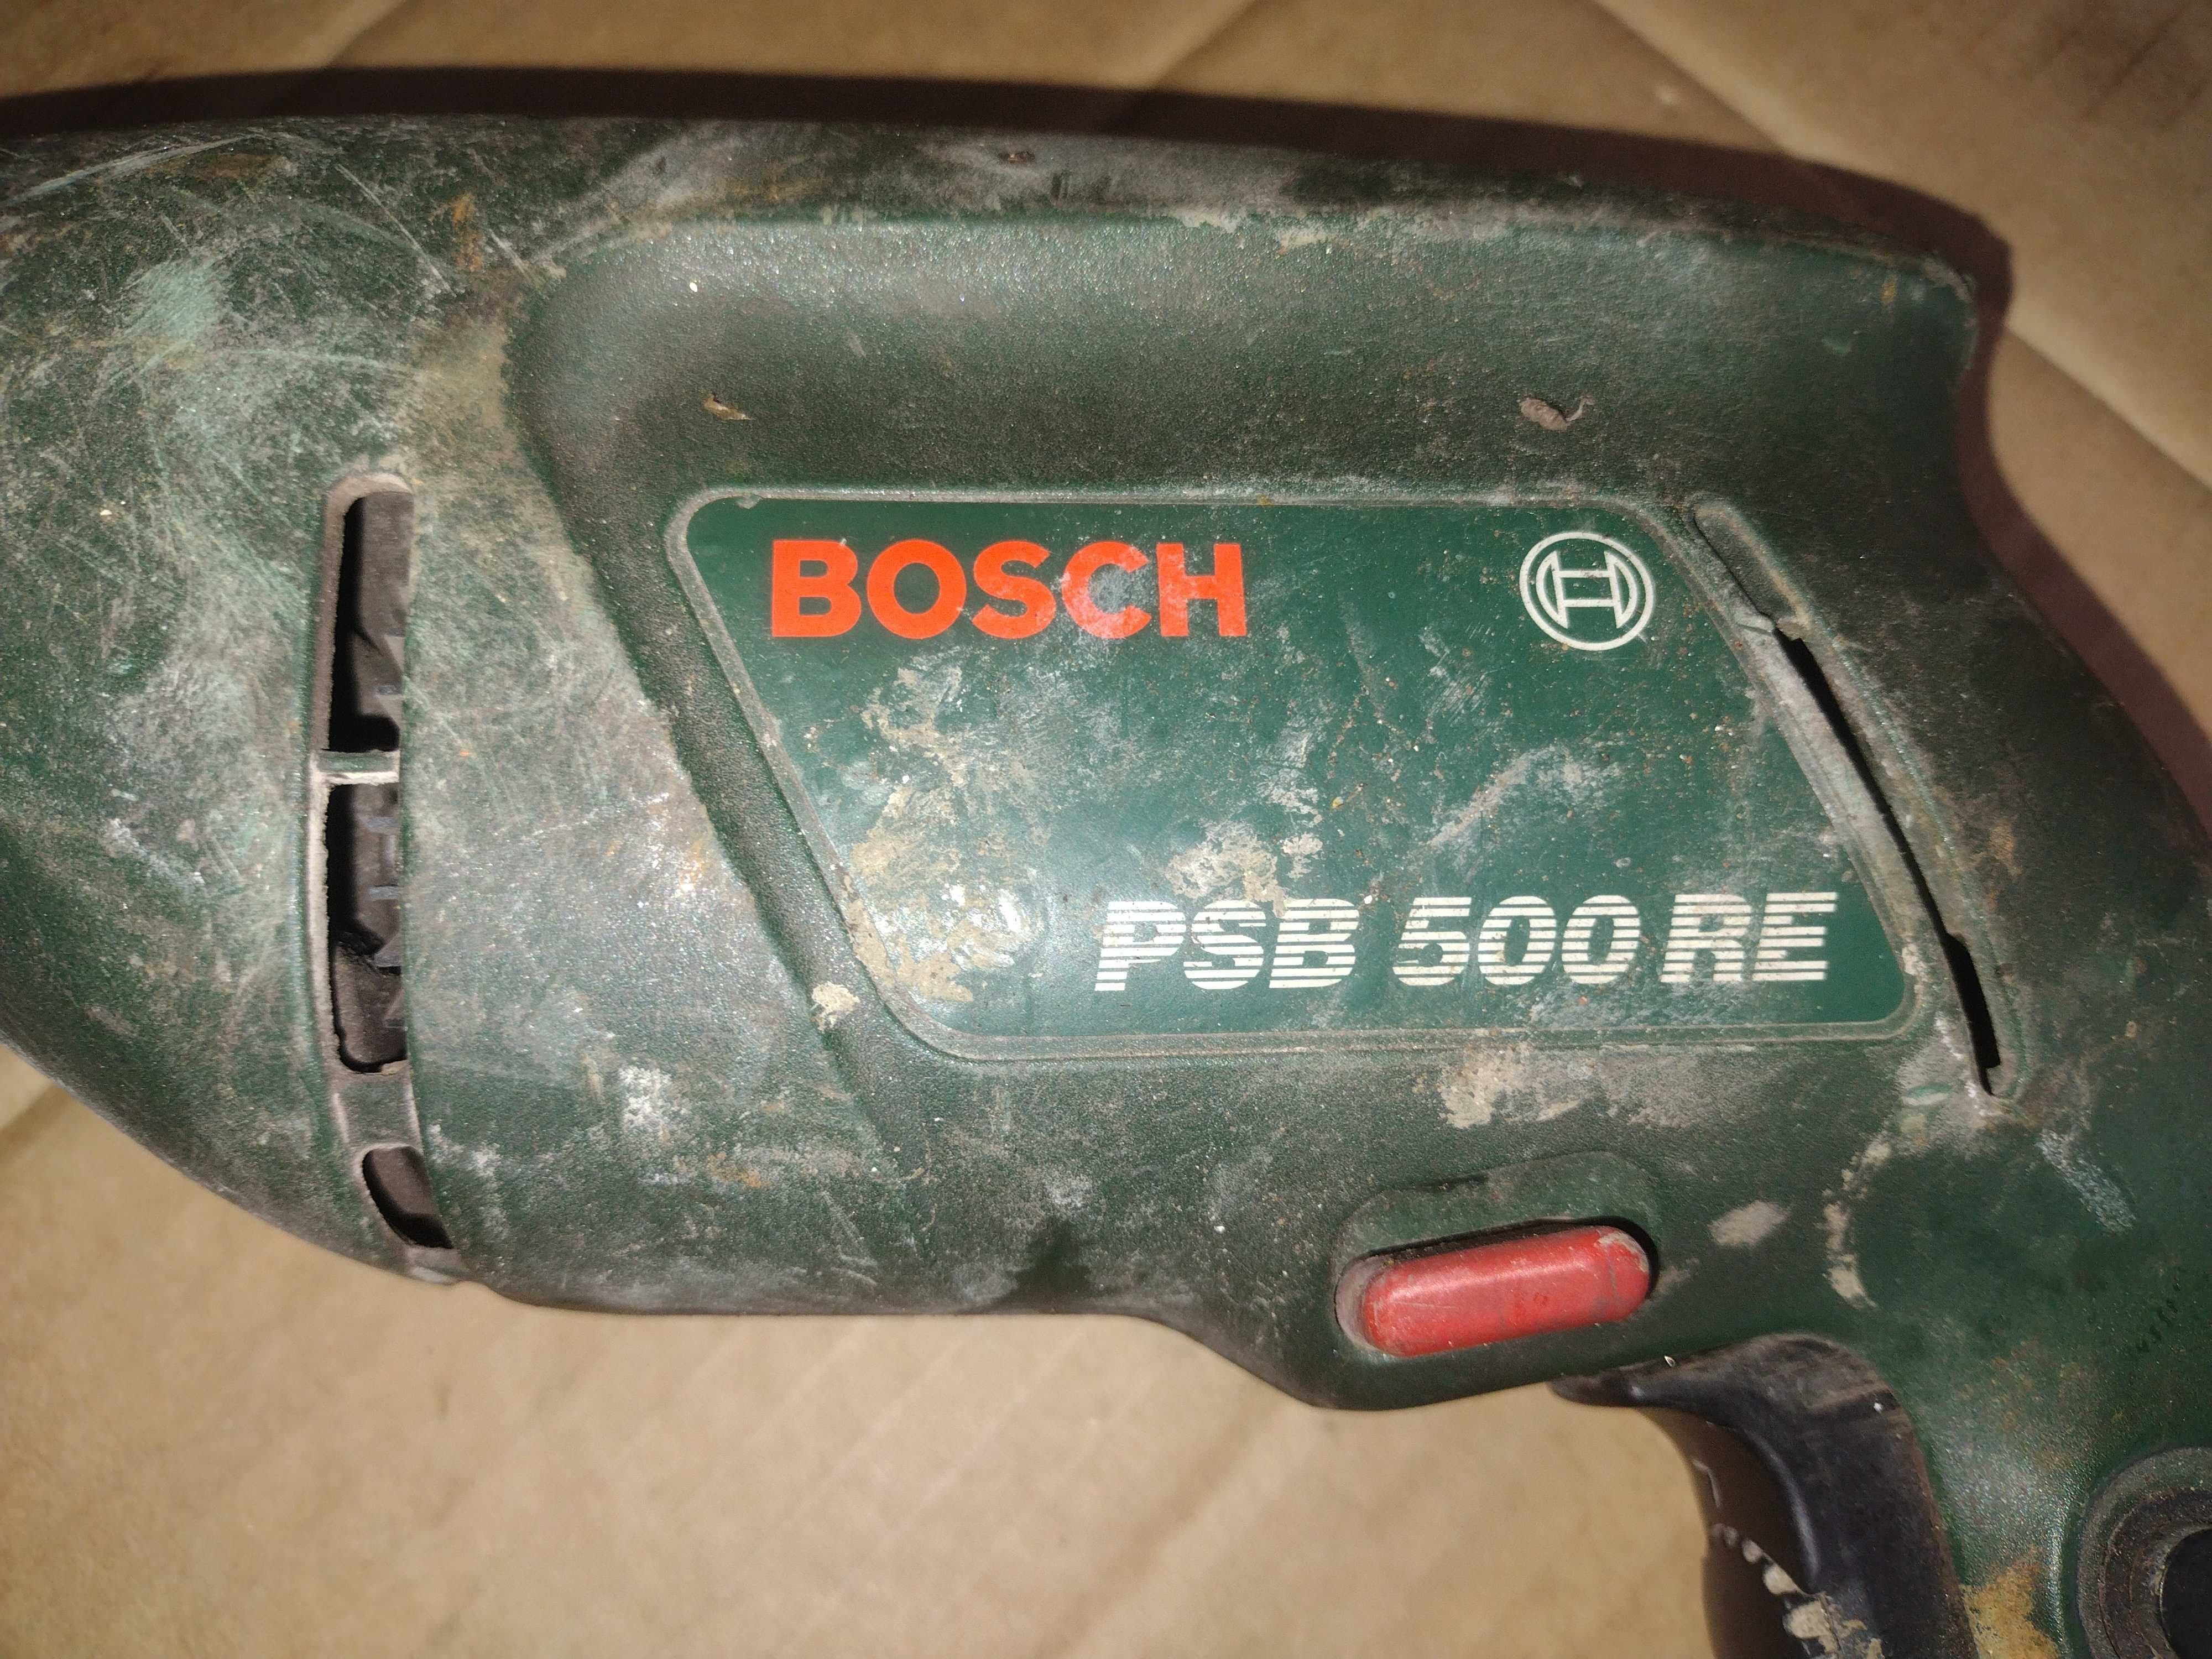 Wiertarka Bosch PSB 500 RE sprawna